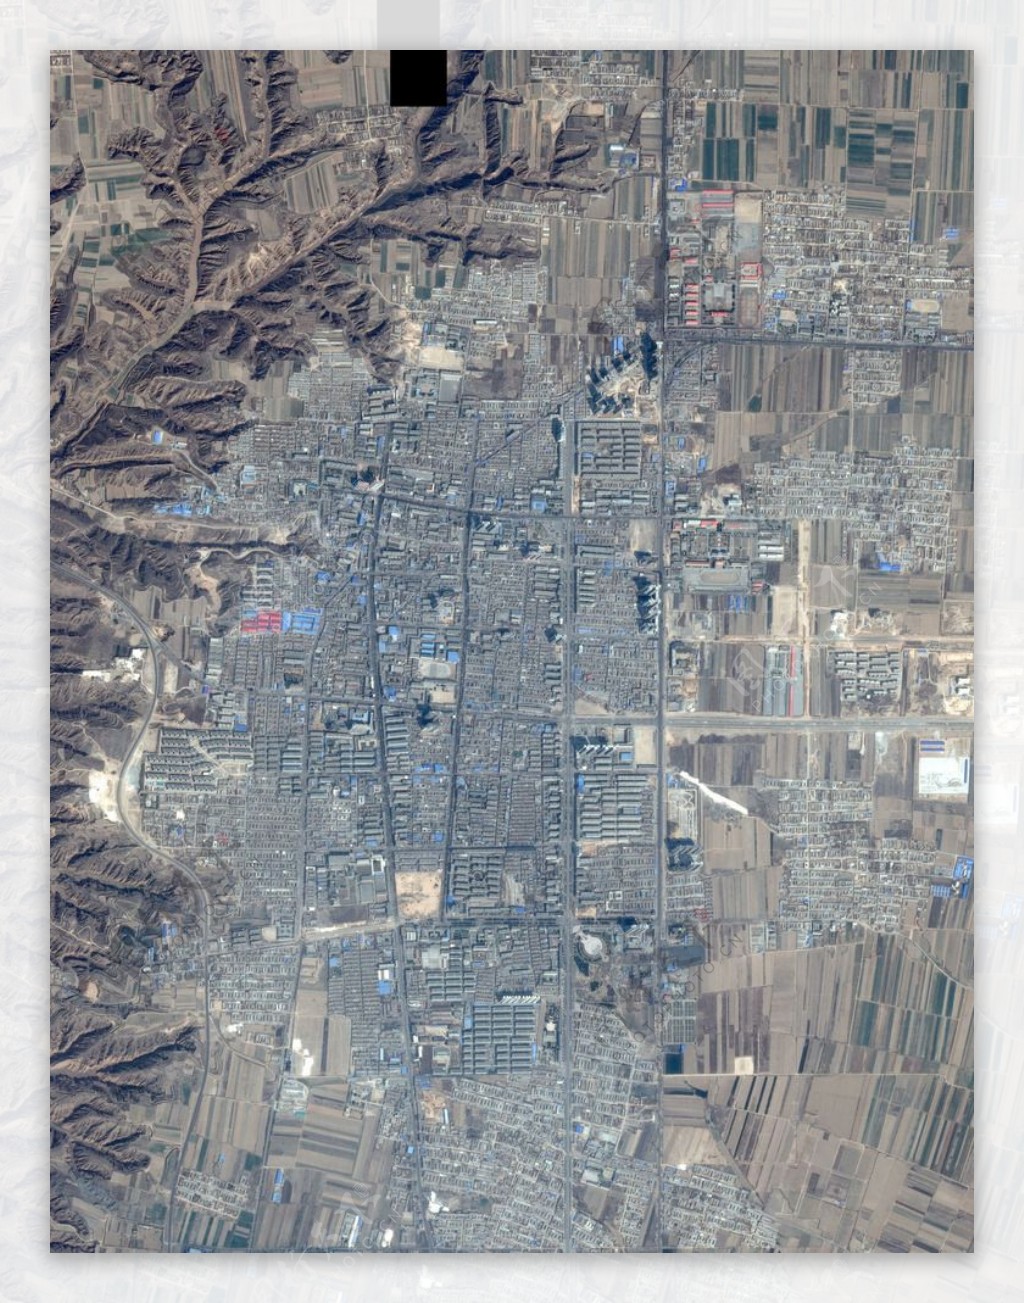 澄城县卫星地图图片